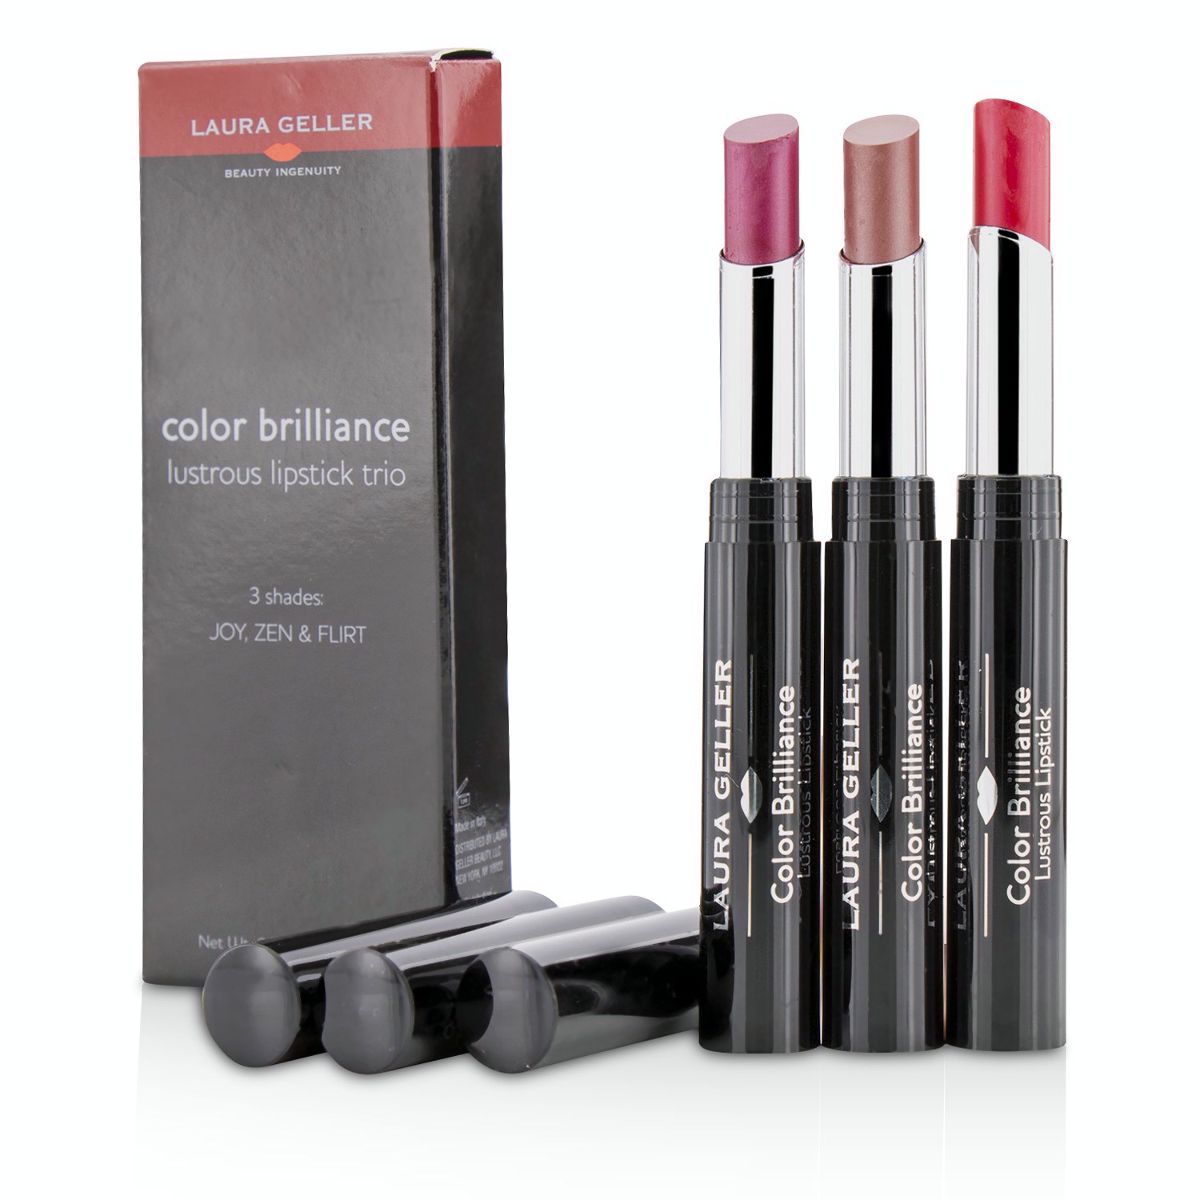 Color Brilliance Lustrous Lipstick Trio Laura Geller Image